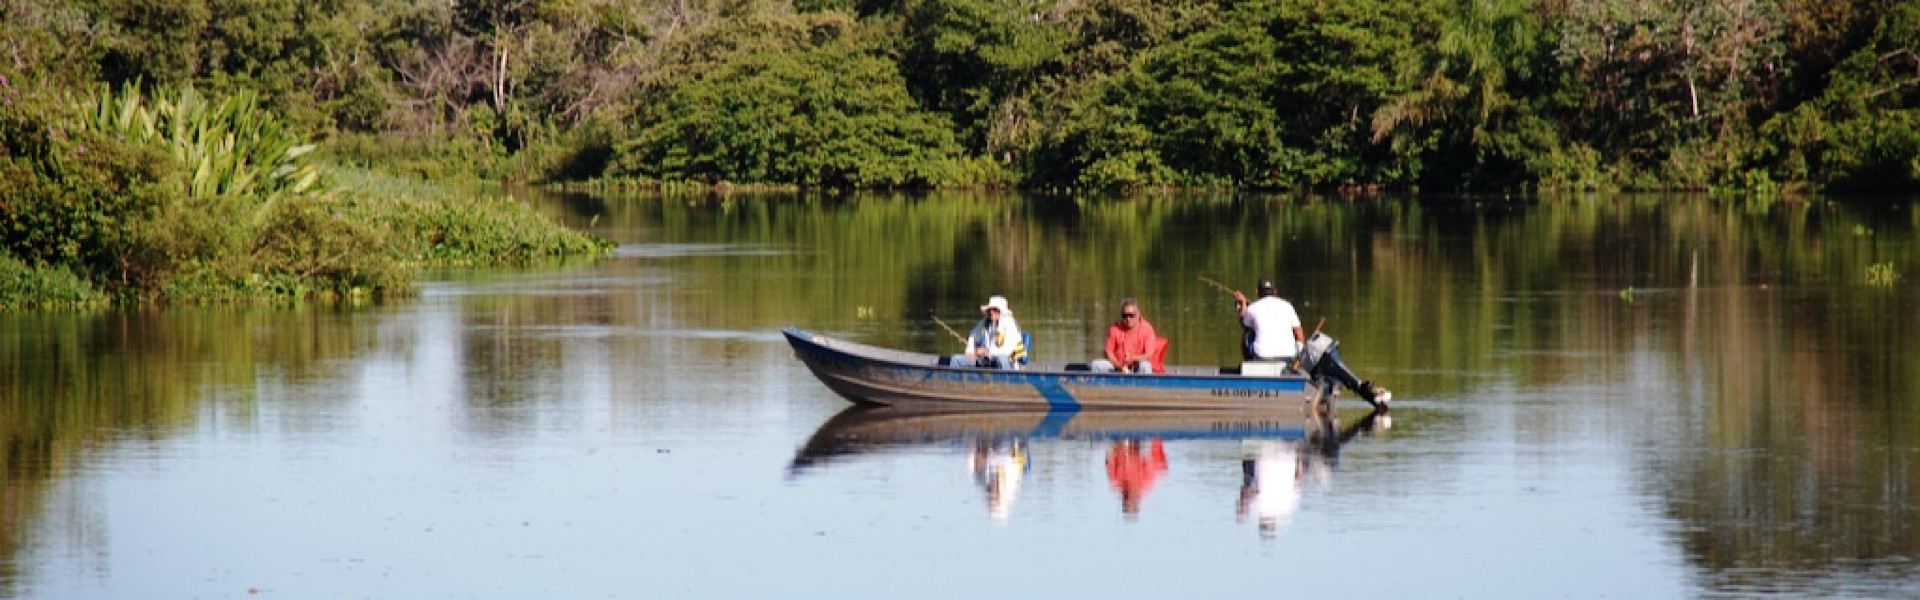 Pesca esportiva no Pantanal volta a ganhar força após chuvas intensas